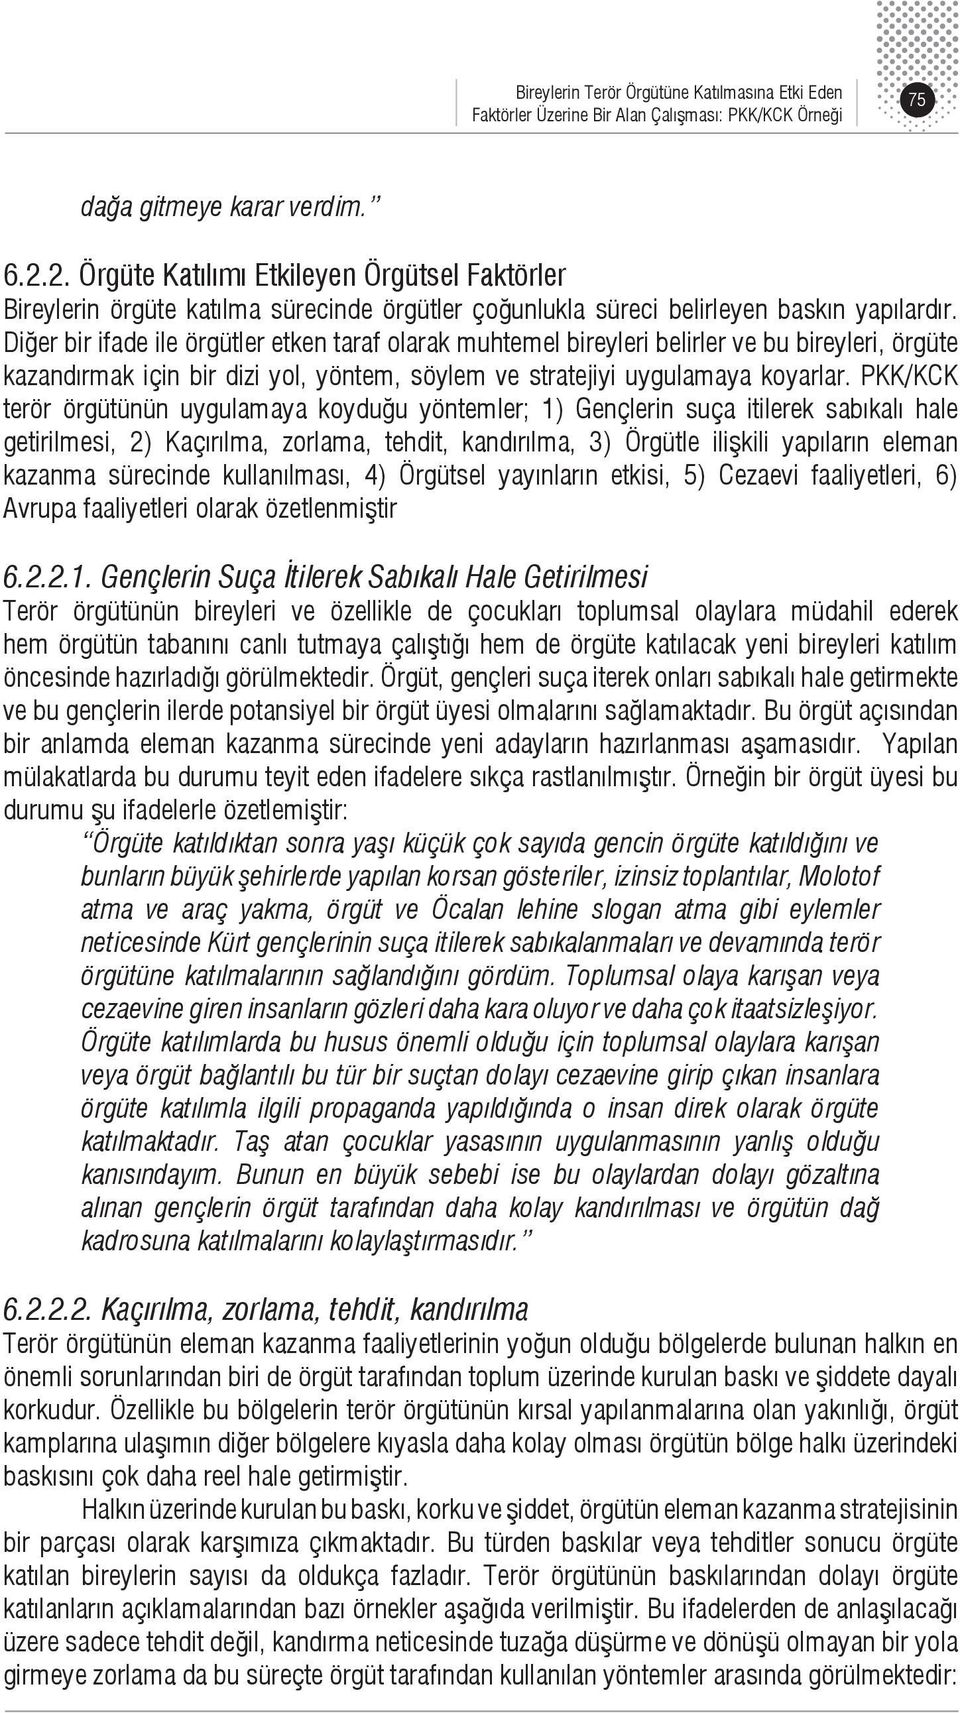 PKK/KCK terör örgütünün uygulamaya koyduğu yöntemler; 1) Gençlerin suça itilerek sabıkalı hale getirilmesi, 2) Kaçırılma, zorlama, tehdit, kandırılma, 3) Örgütle ilişkili yapıların eleman kazanma